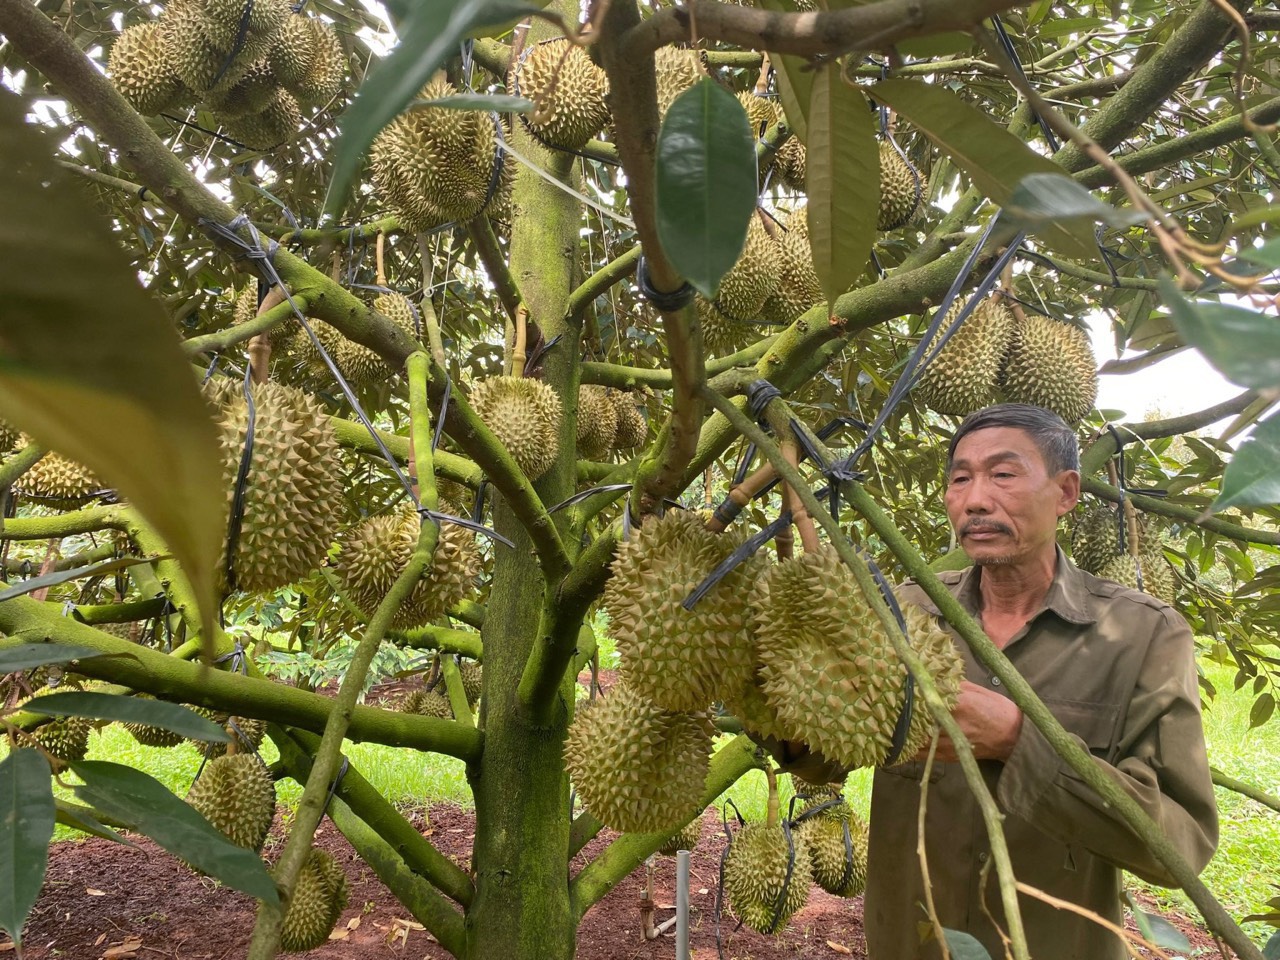 Sầu riêng mới nhú bông, nhà vườn ở Đắk Lắk đã vội nhận tiền cọc, dự báo thêm một mùa sầu riêng 'nóng'- Ảnh 3.